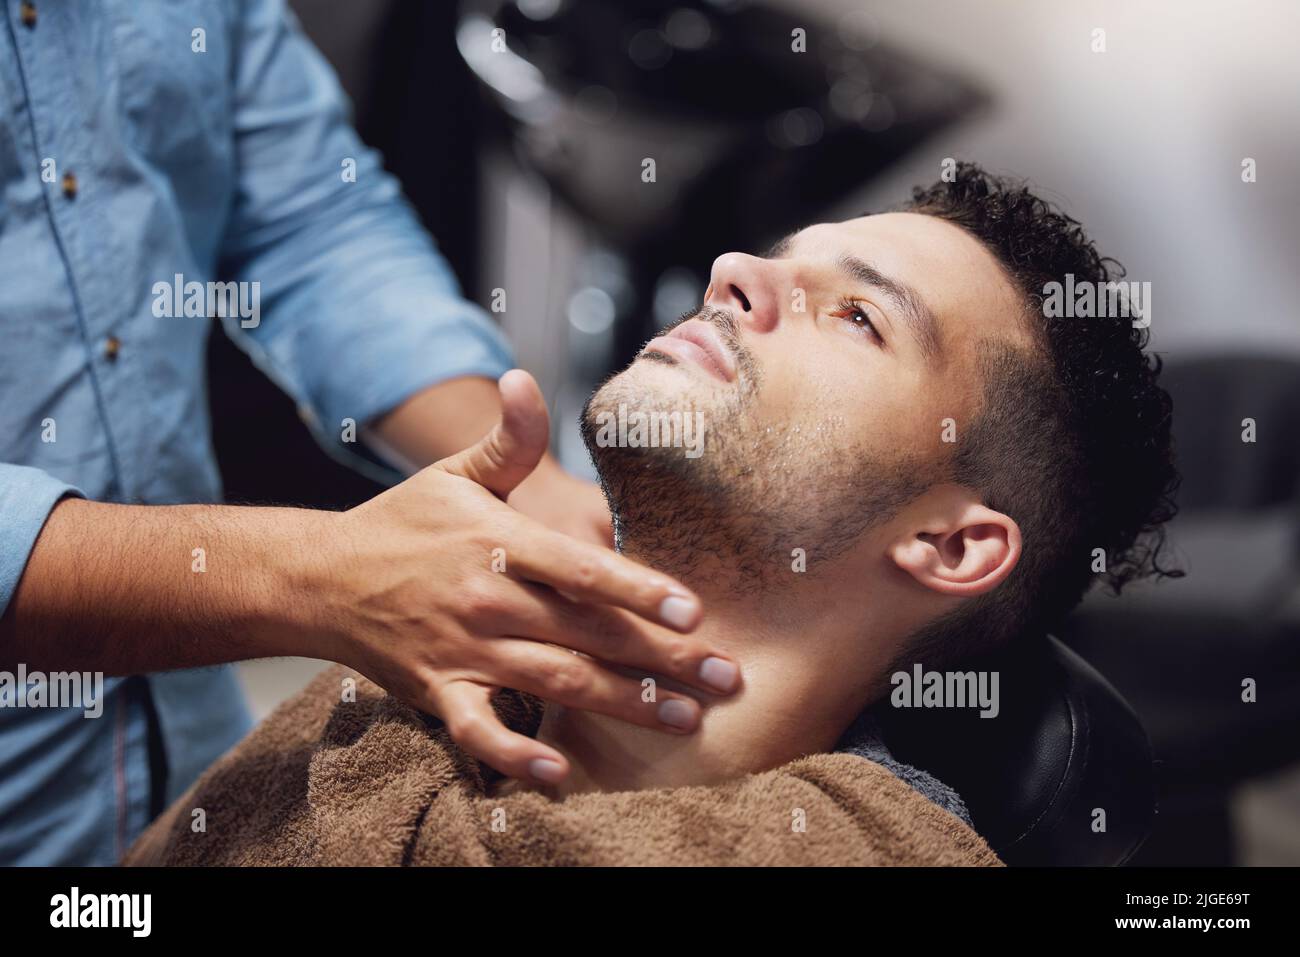 Er reinigt gut. Ein hübscher junger Mann, der von einem Friseur gepflegt wird. Stockfoto